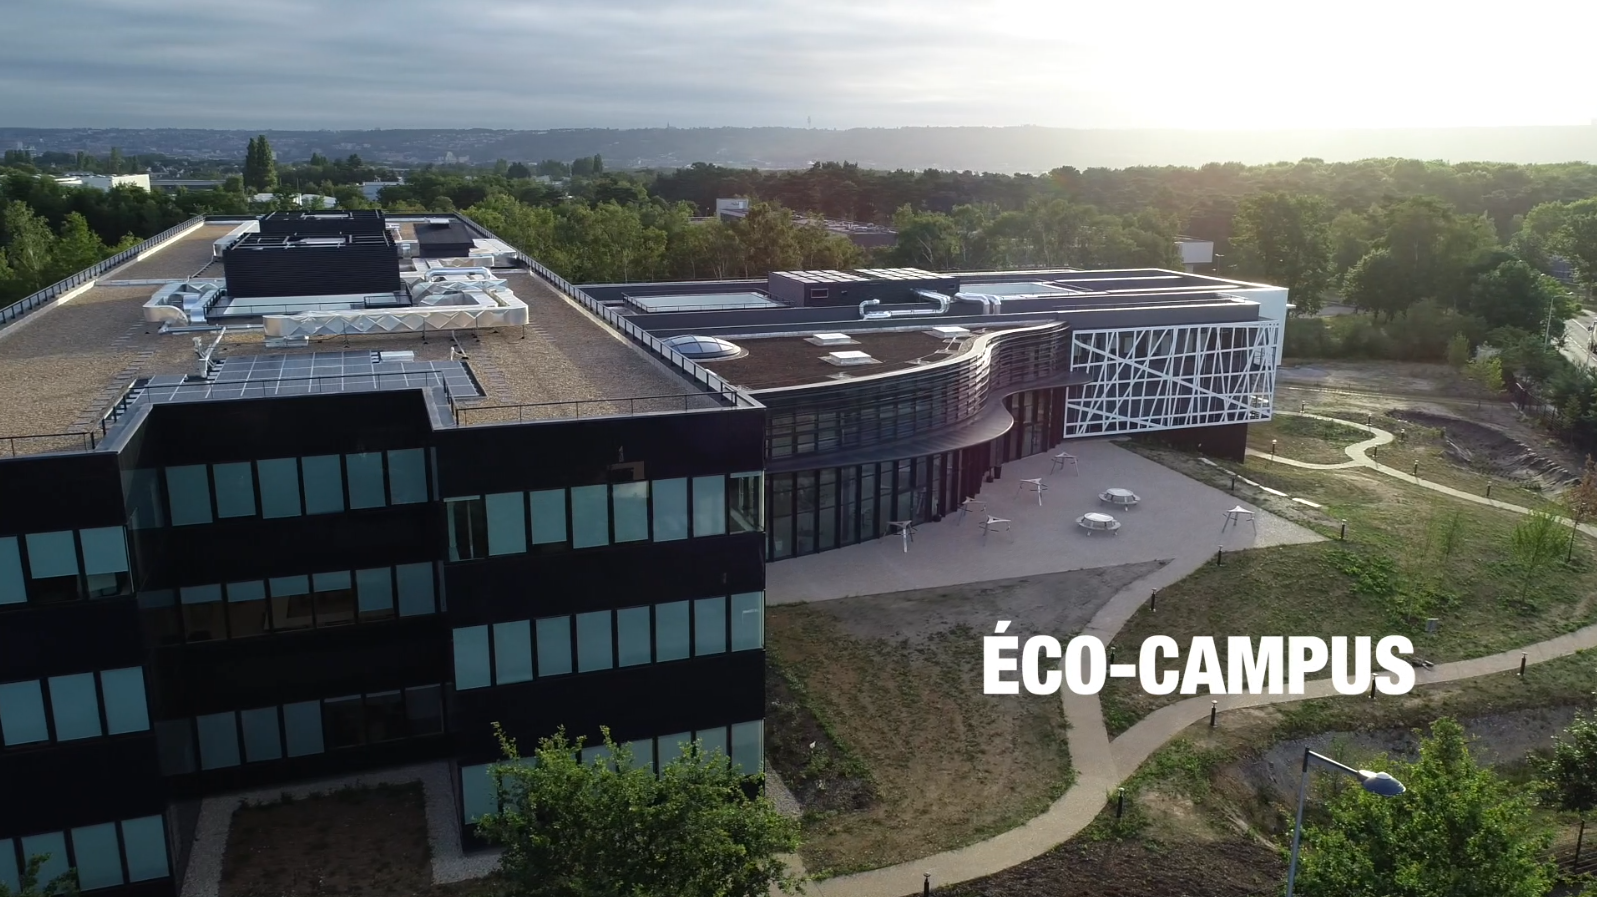 Survolez l’éco-campus de formation CESI Rouen, une opération innovante réalisée par Eiffage Construction